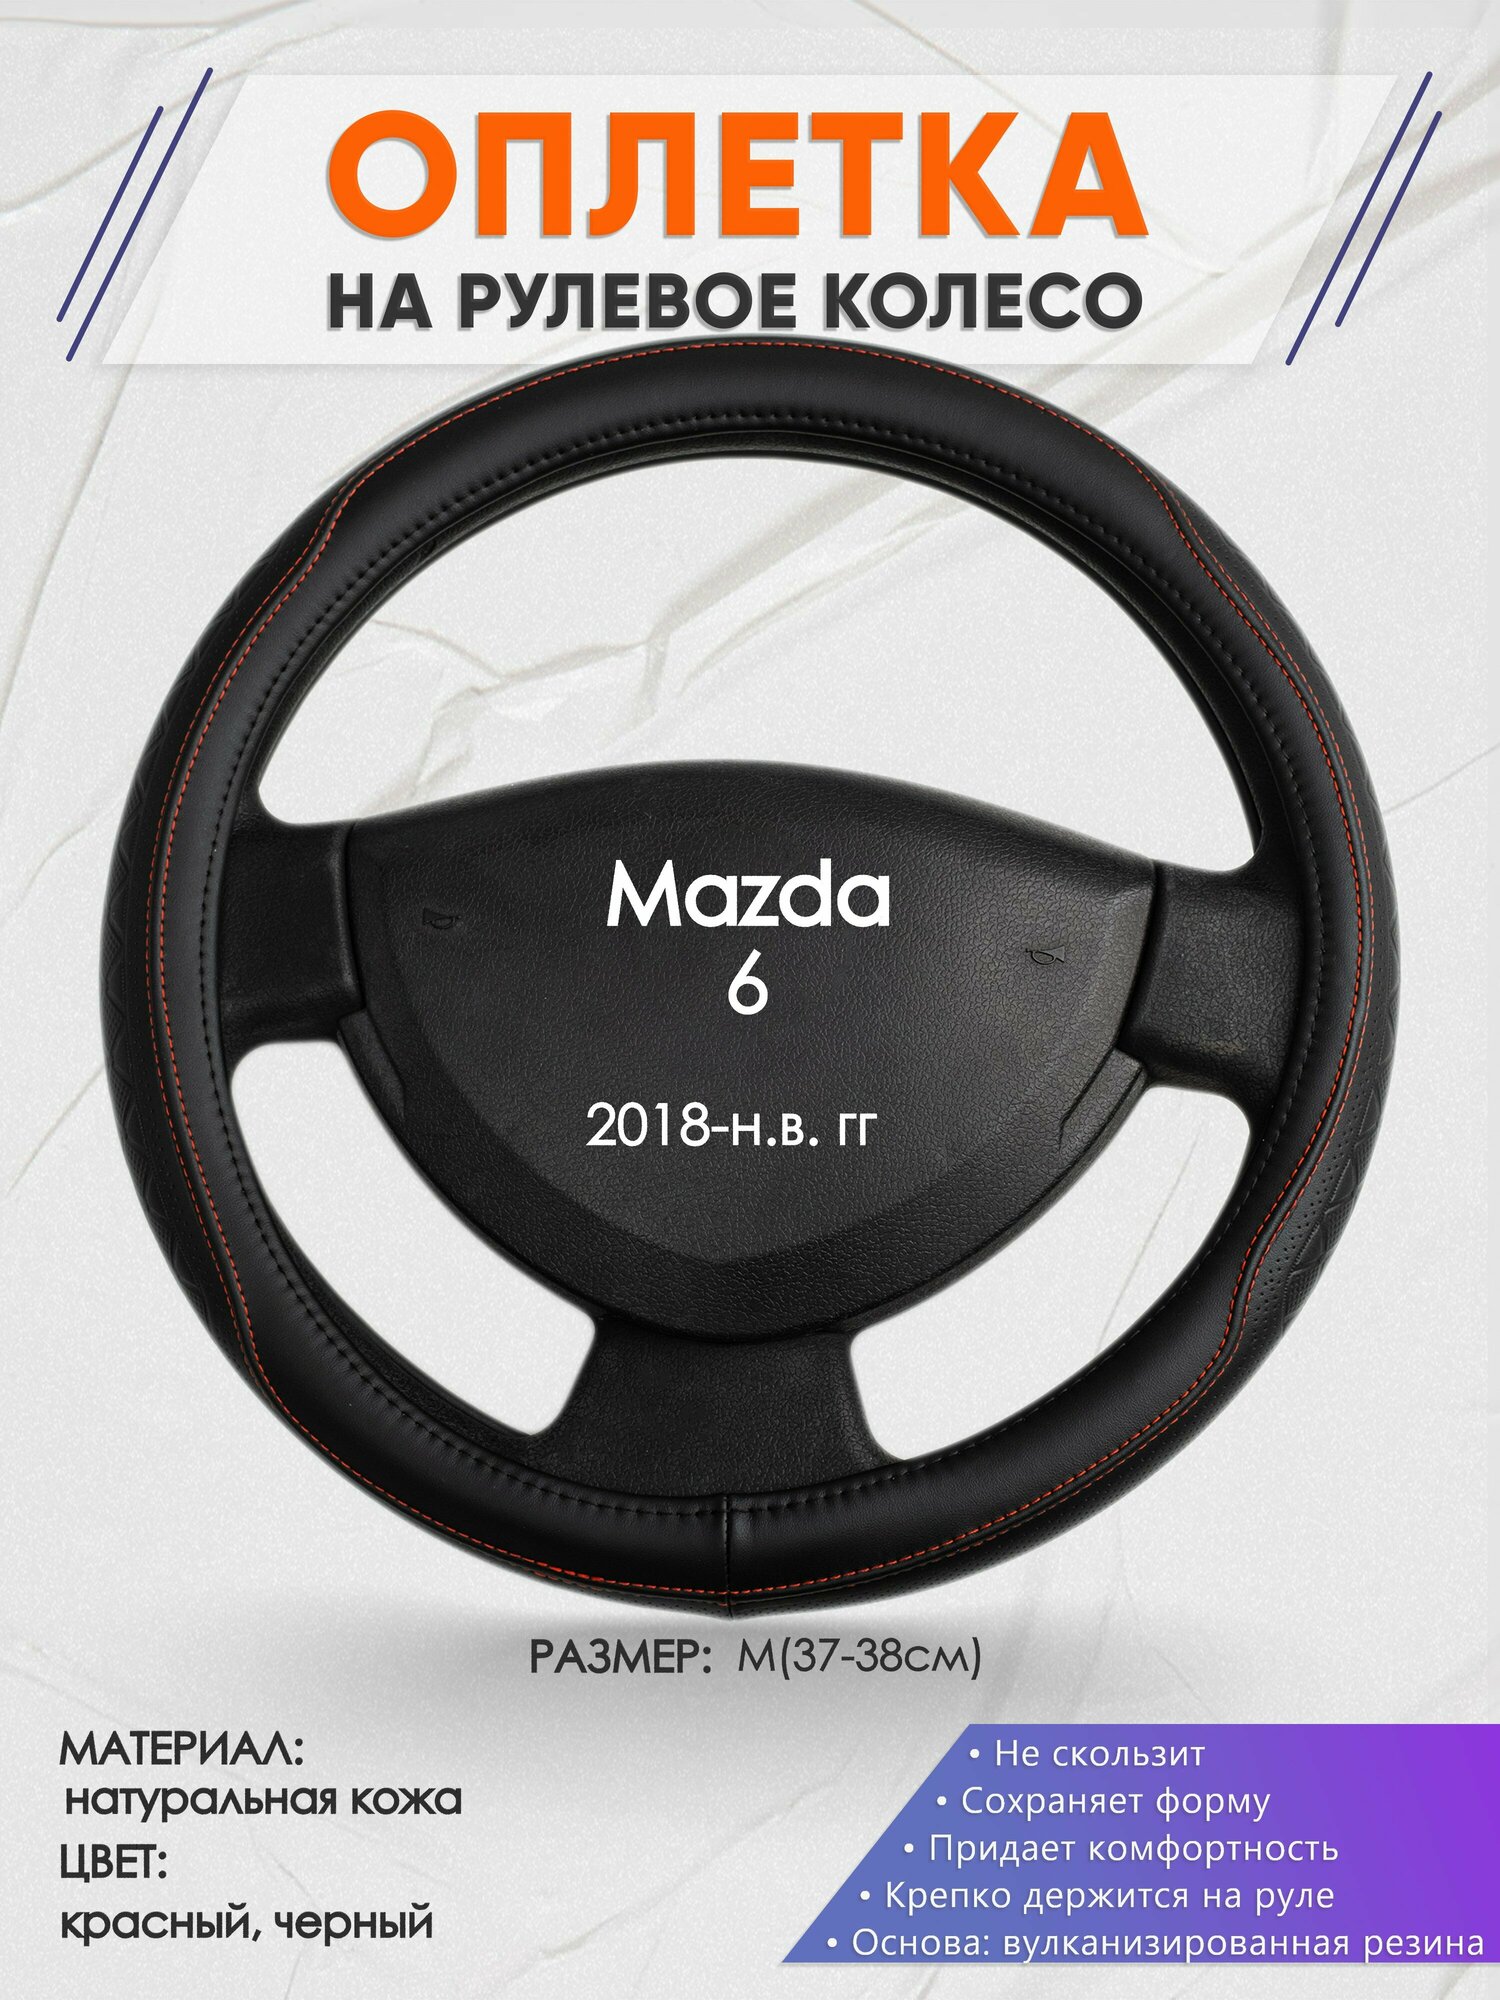 Оплетка на руль для Mazda 6 (Мазда 6) 2018-н. в, M(37-38см), Натуральная кожа 90